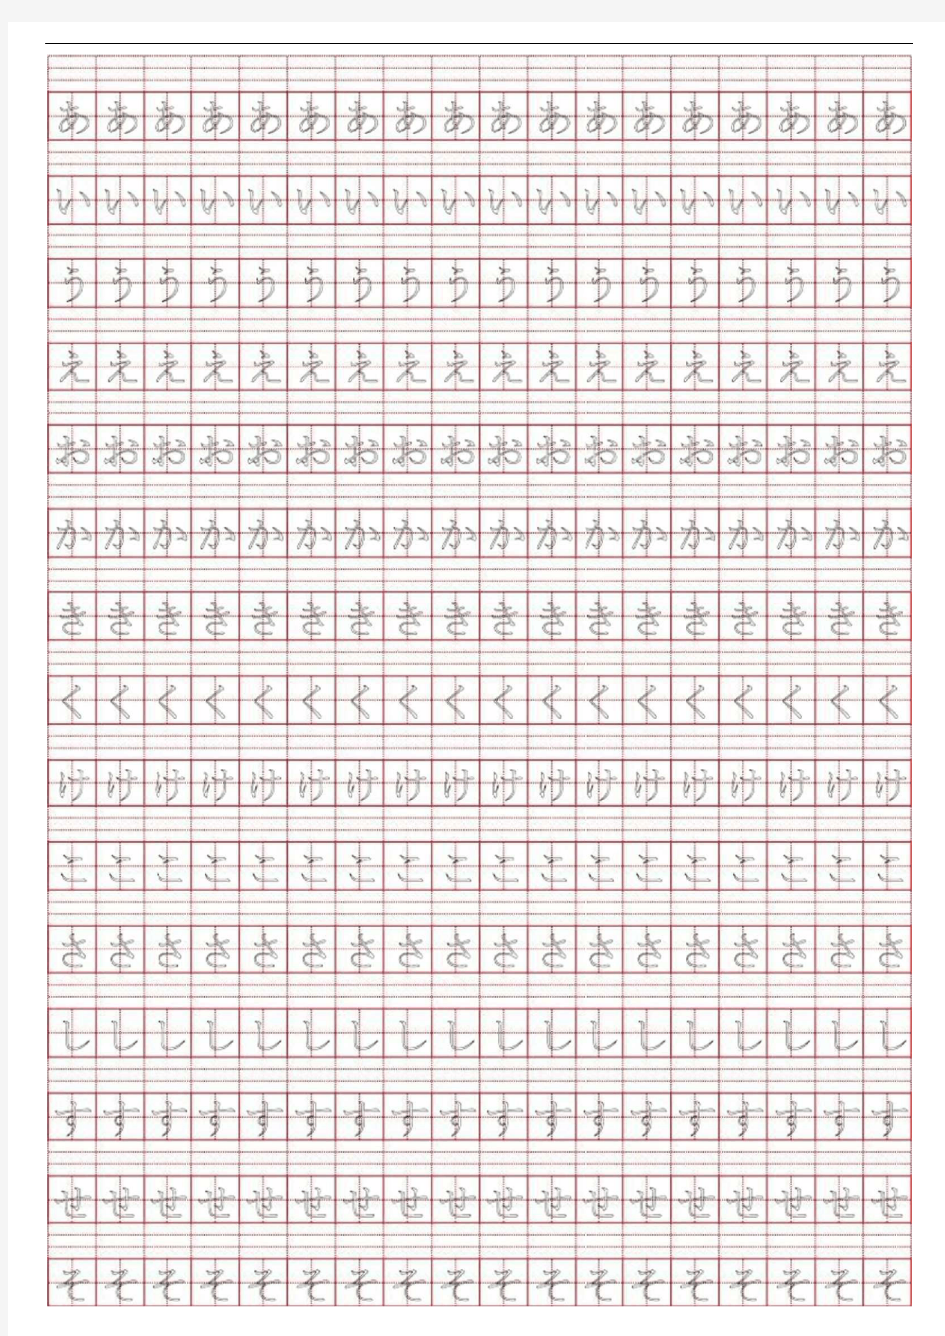 日语五十音图(描红,田字格)